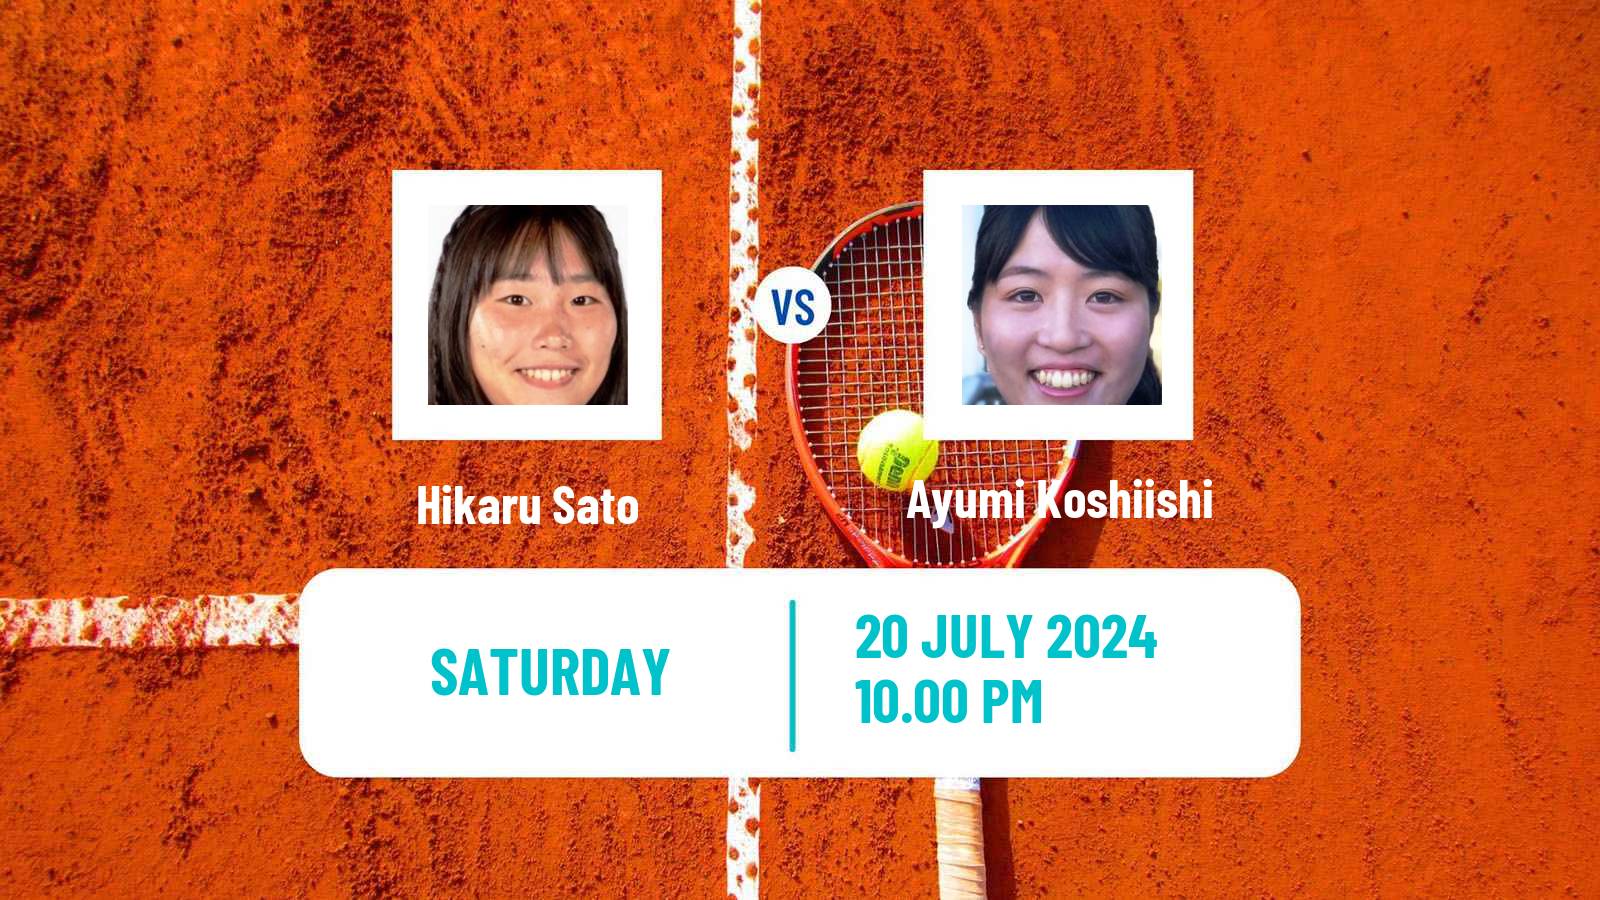 Tennis ITF W15 Nakhon Si Thammarat 4 Women Hikaru Sato - Ayumi Koshiishi